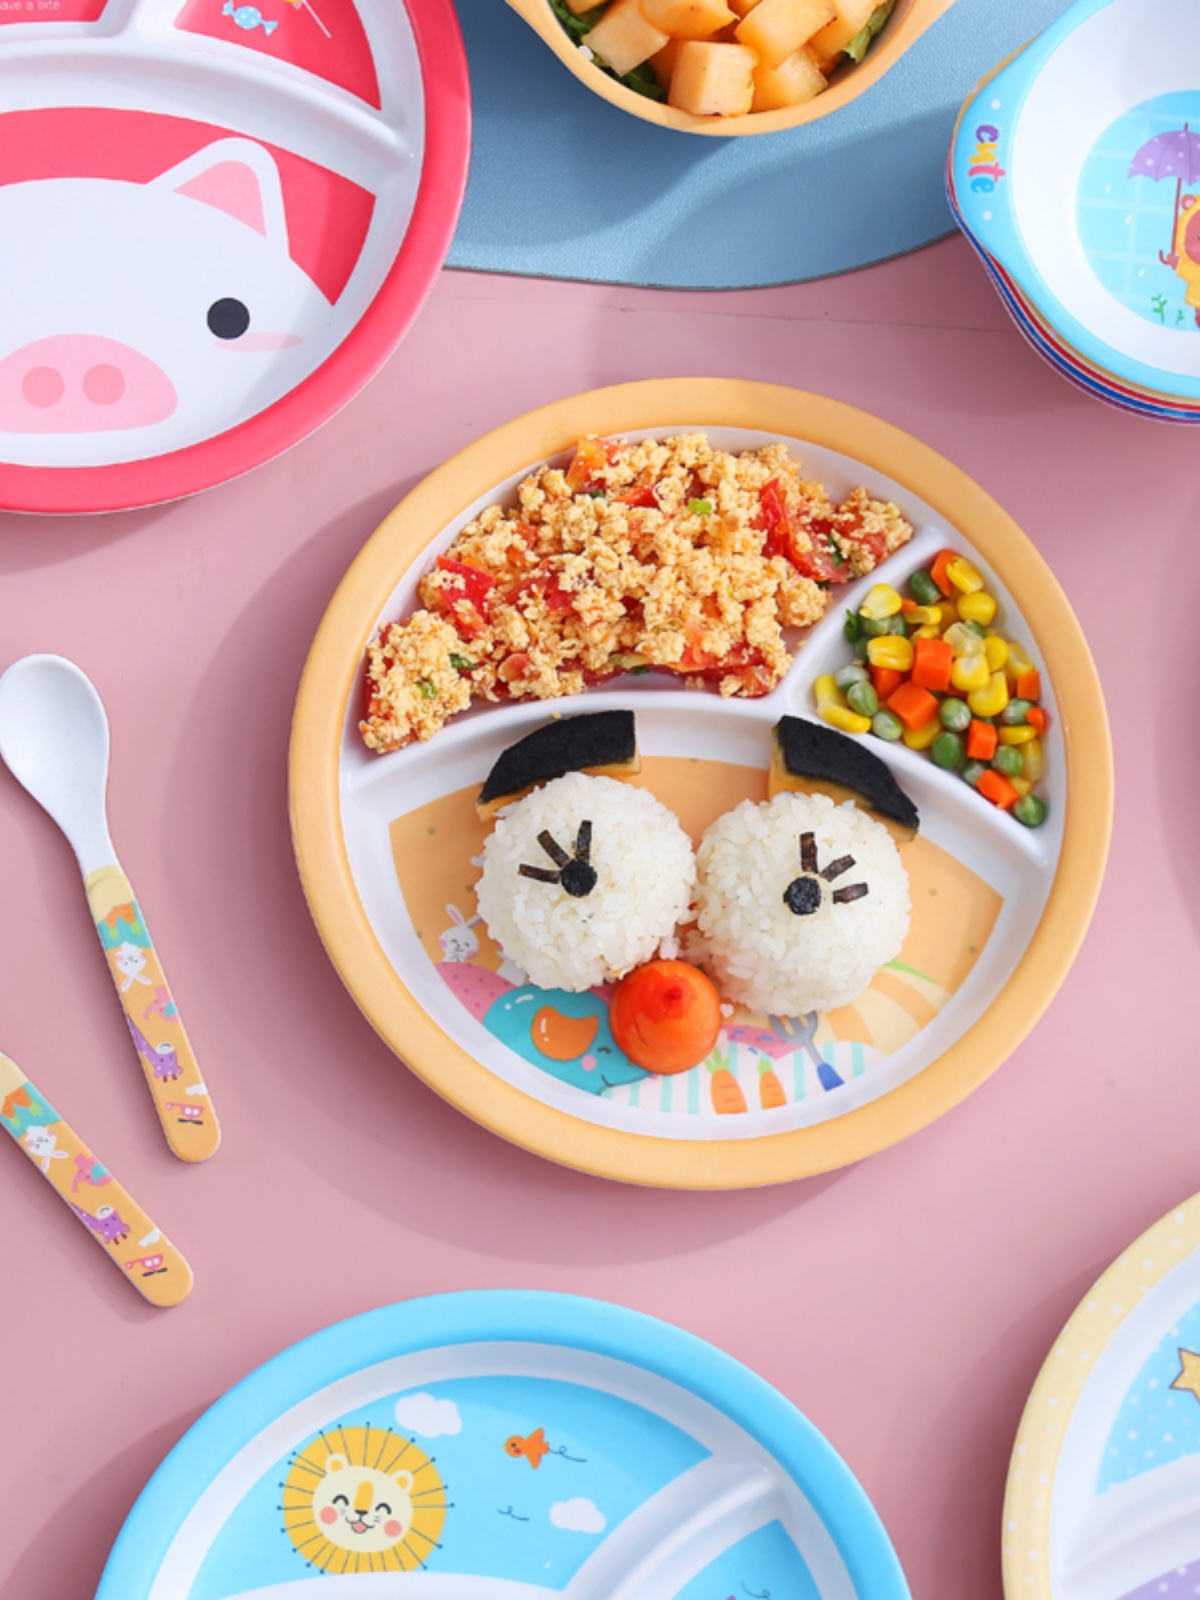 儿童餐具宝宝餐盘辅食碗套装婴儿可爱饭碗叉子勺子分格卡通吃饭